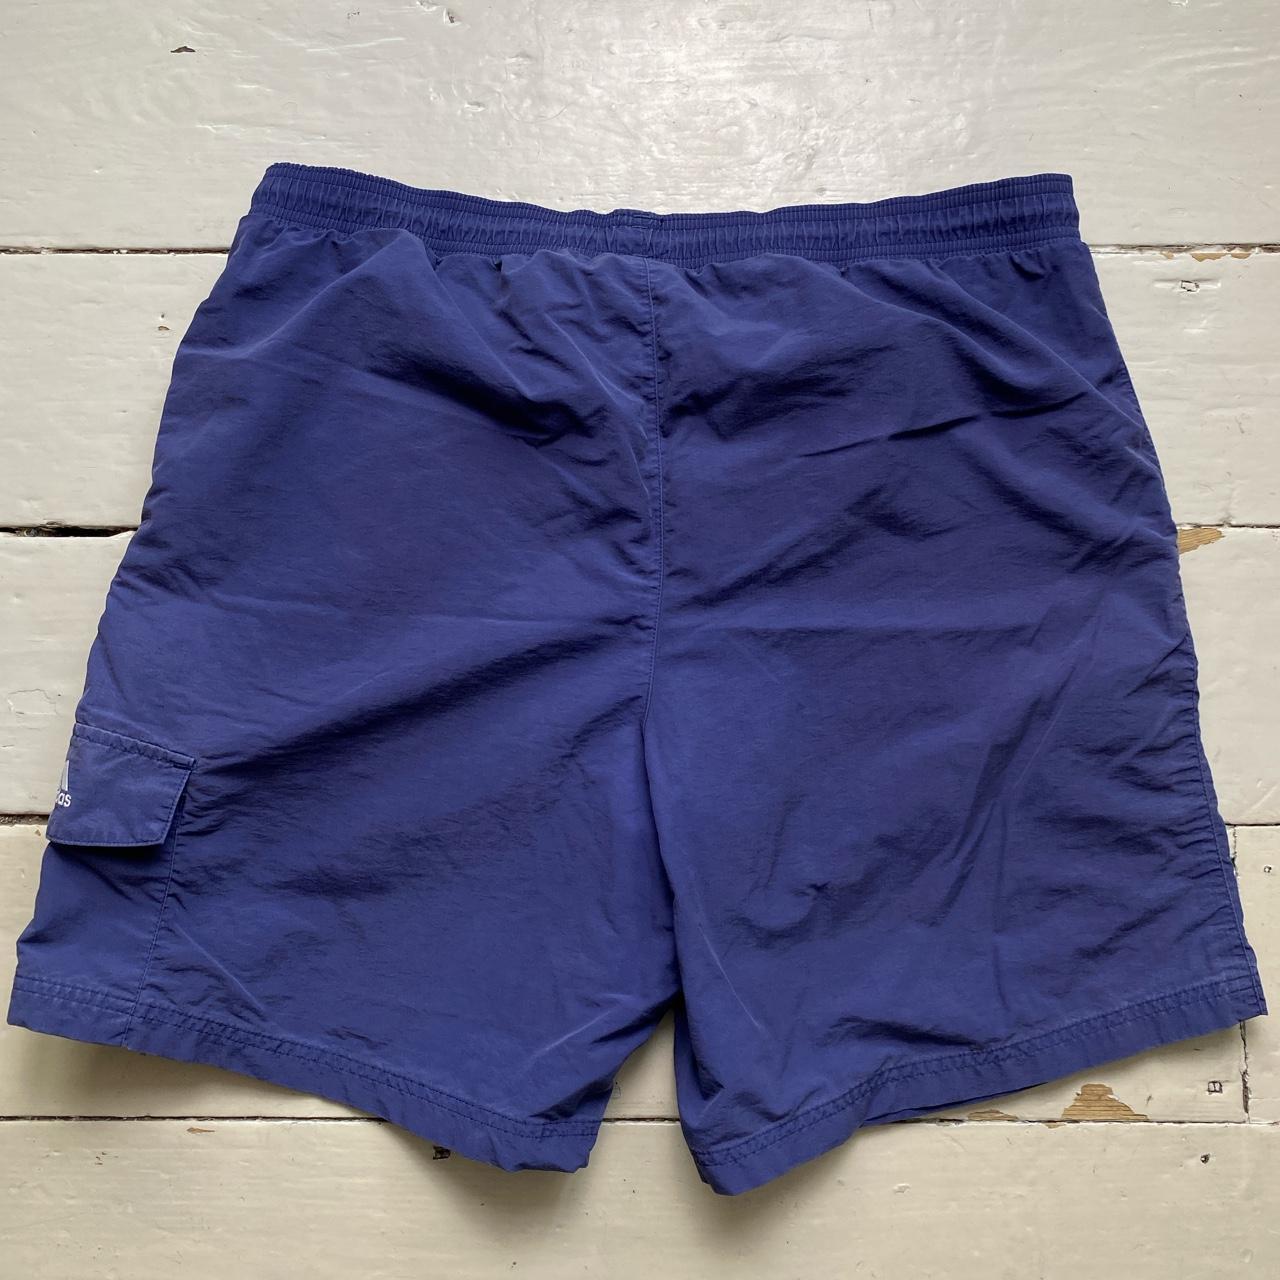 Adidas Vintage Swim Trunk Shorts Navy White Stripes